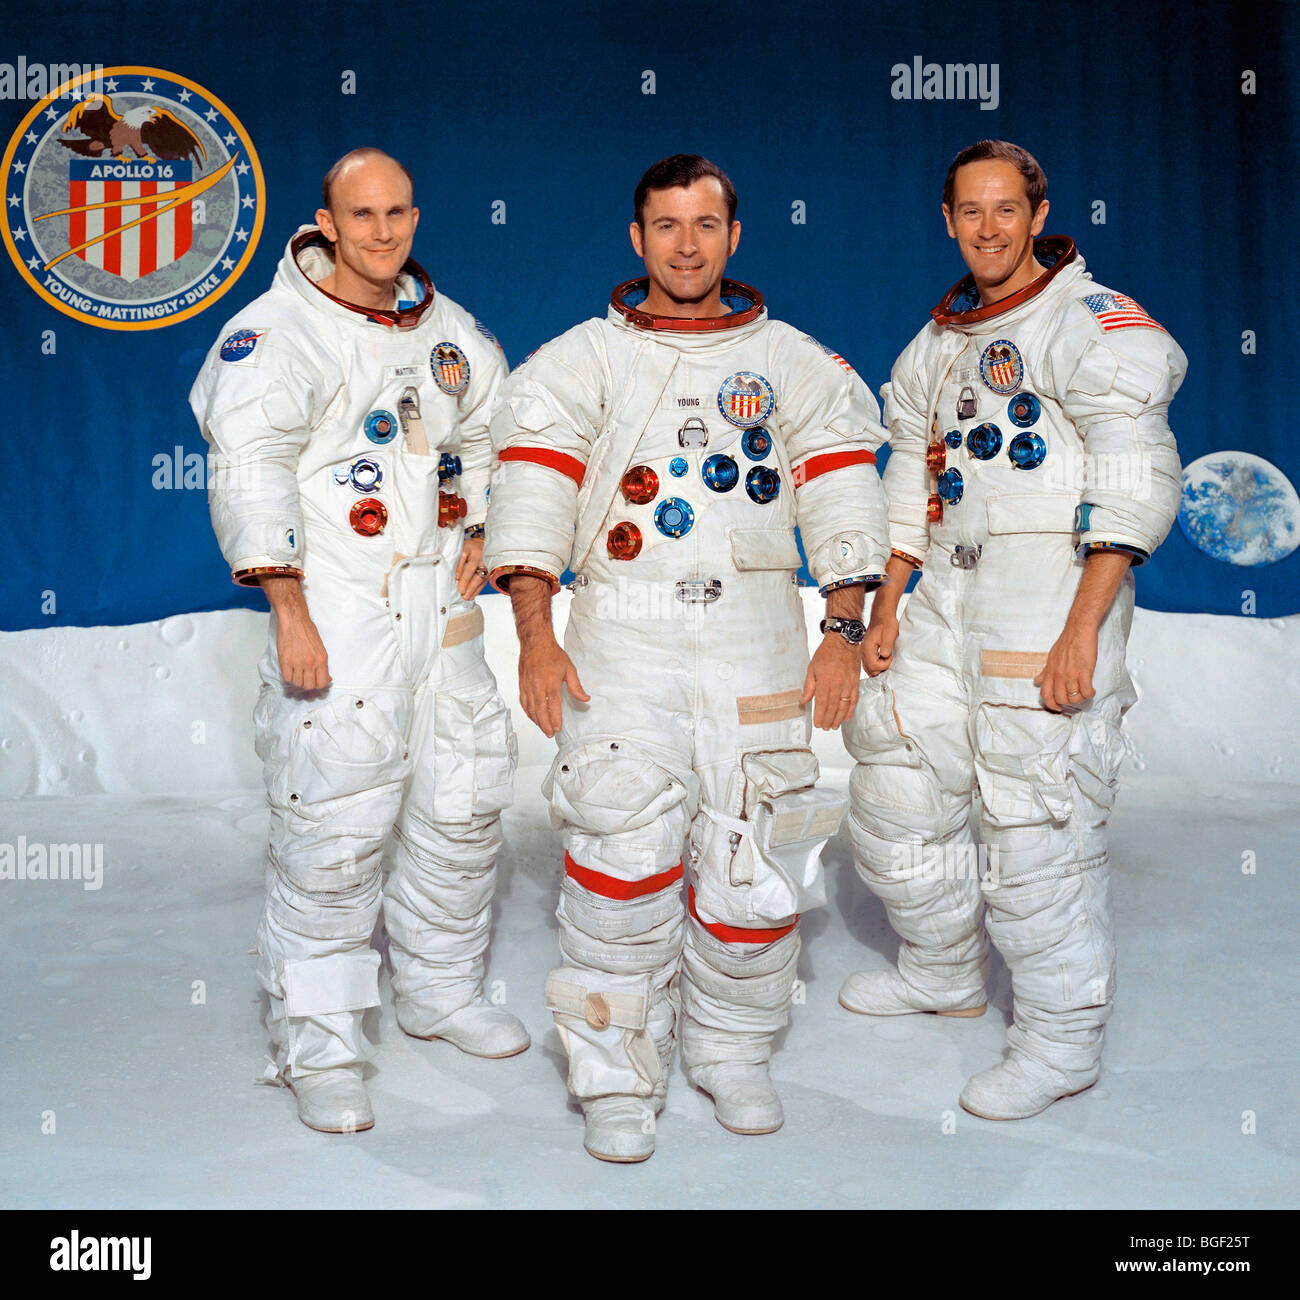 Posada Apolla 16.